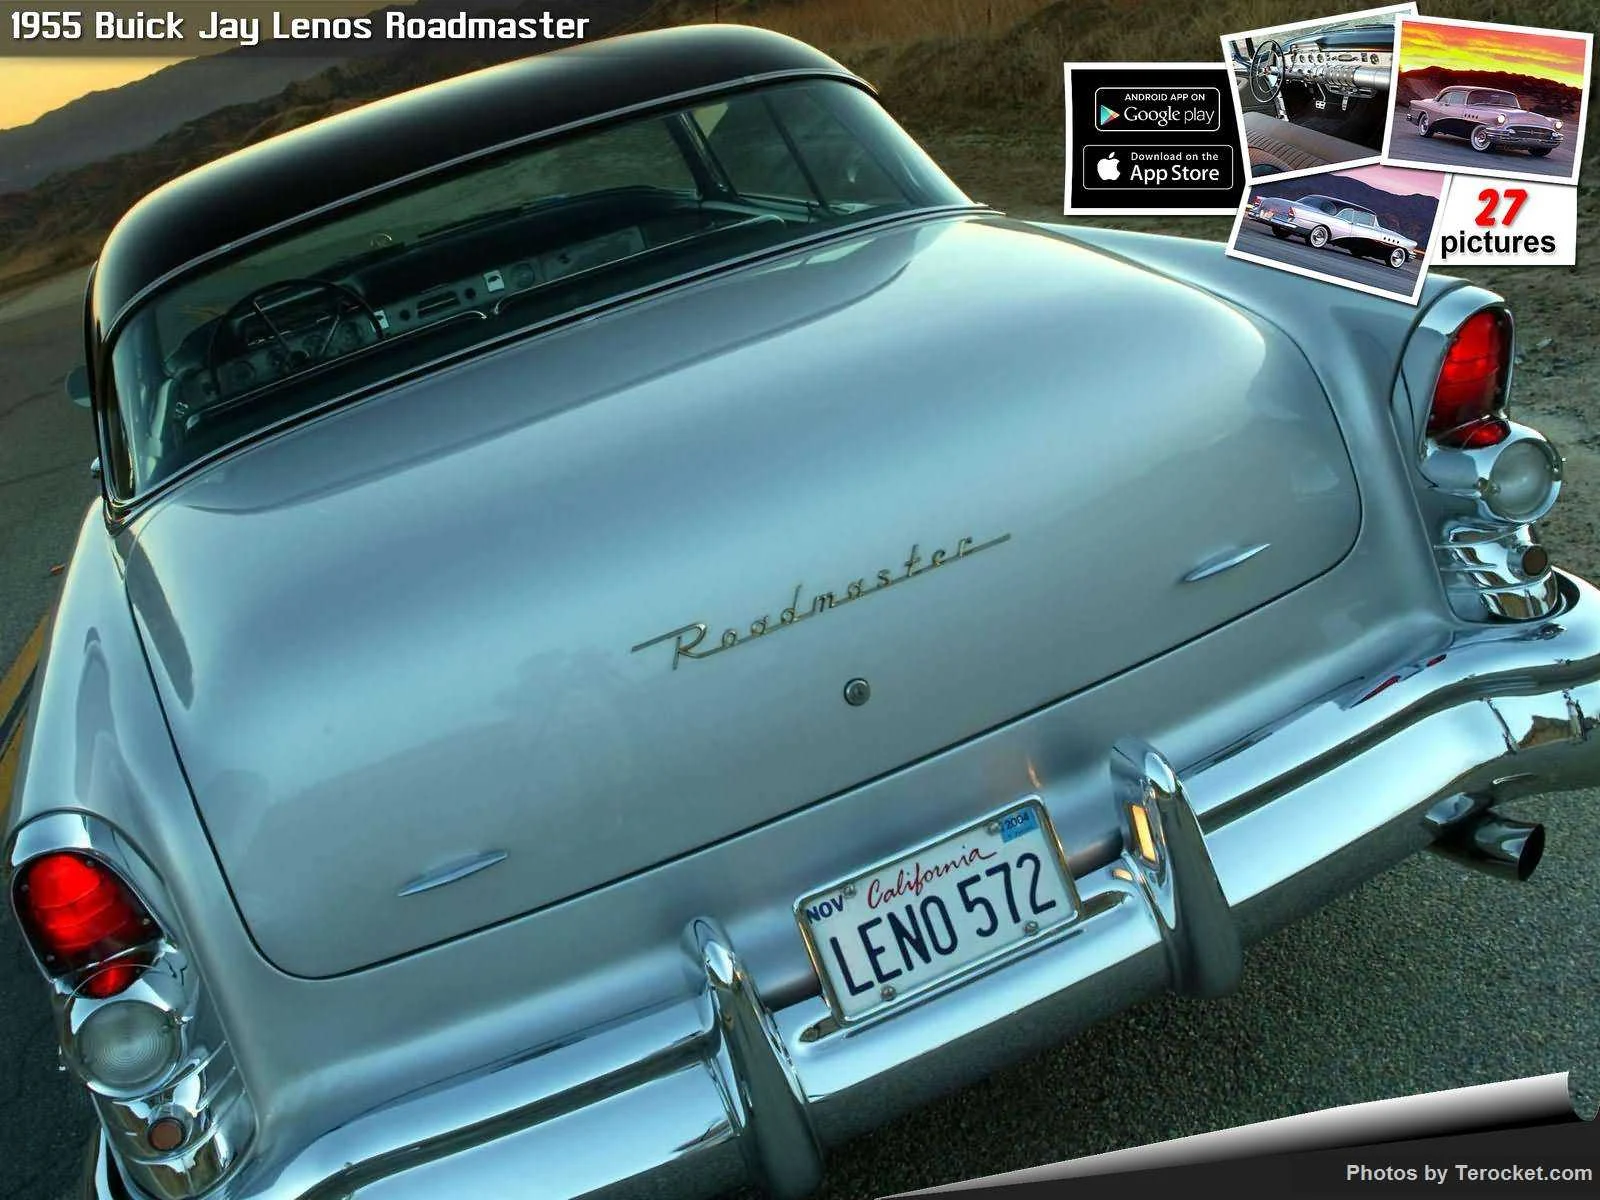 Hình ảnh xe ô tô Buick Jay Lenos Roadmaster 1955 & nội ngoại thất